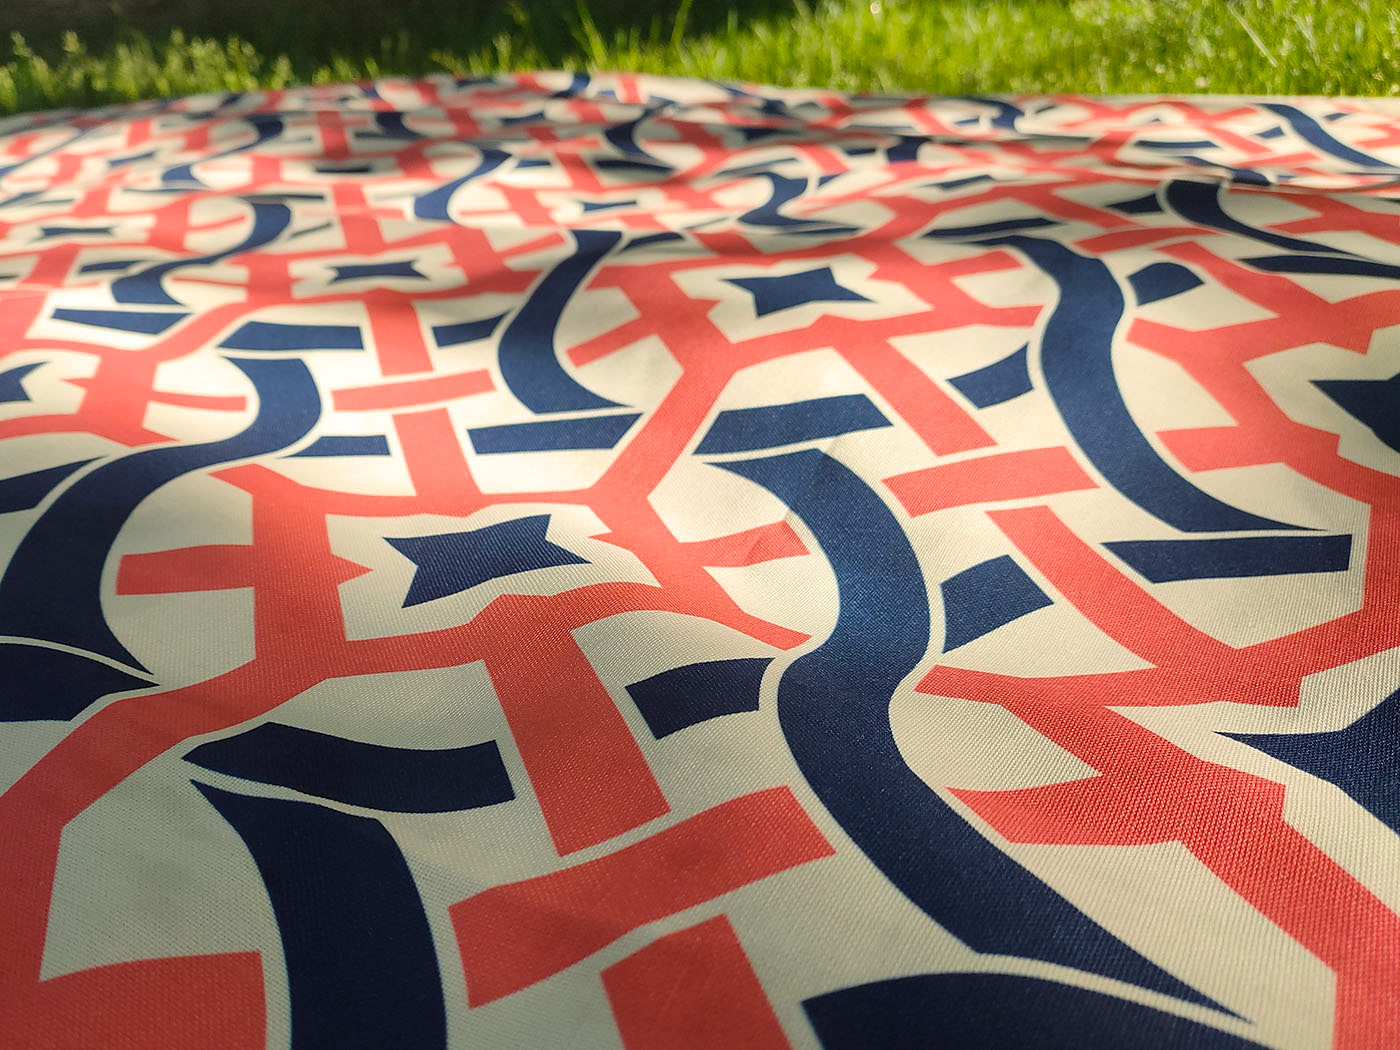 blanket motif Park patro pattern picnic public textile tiles